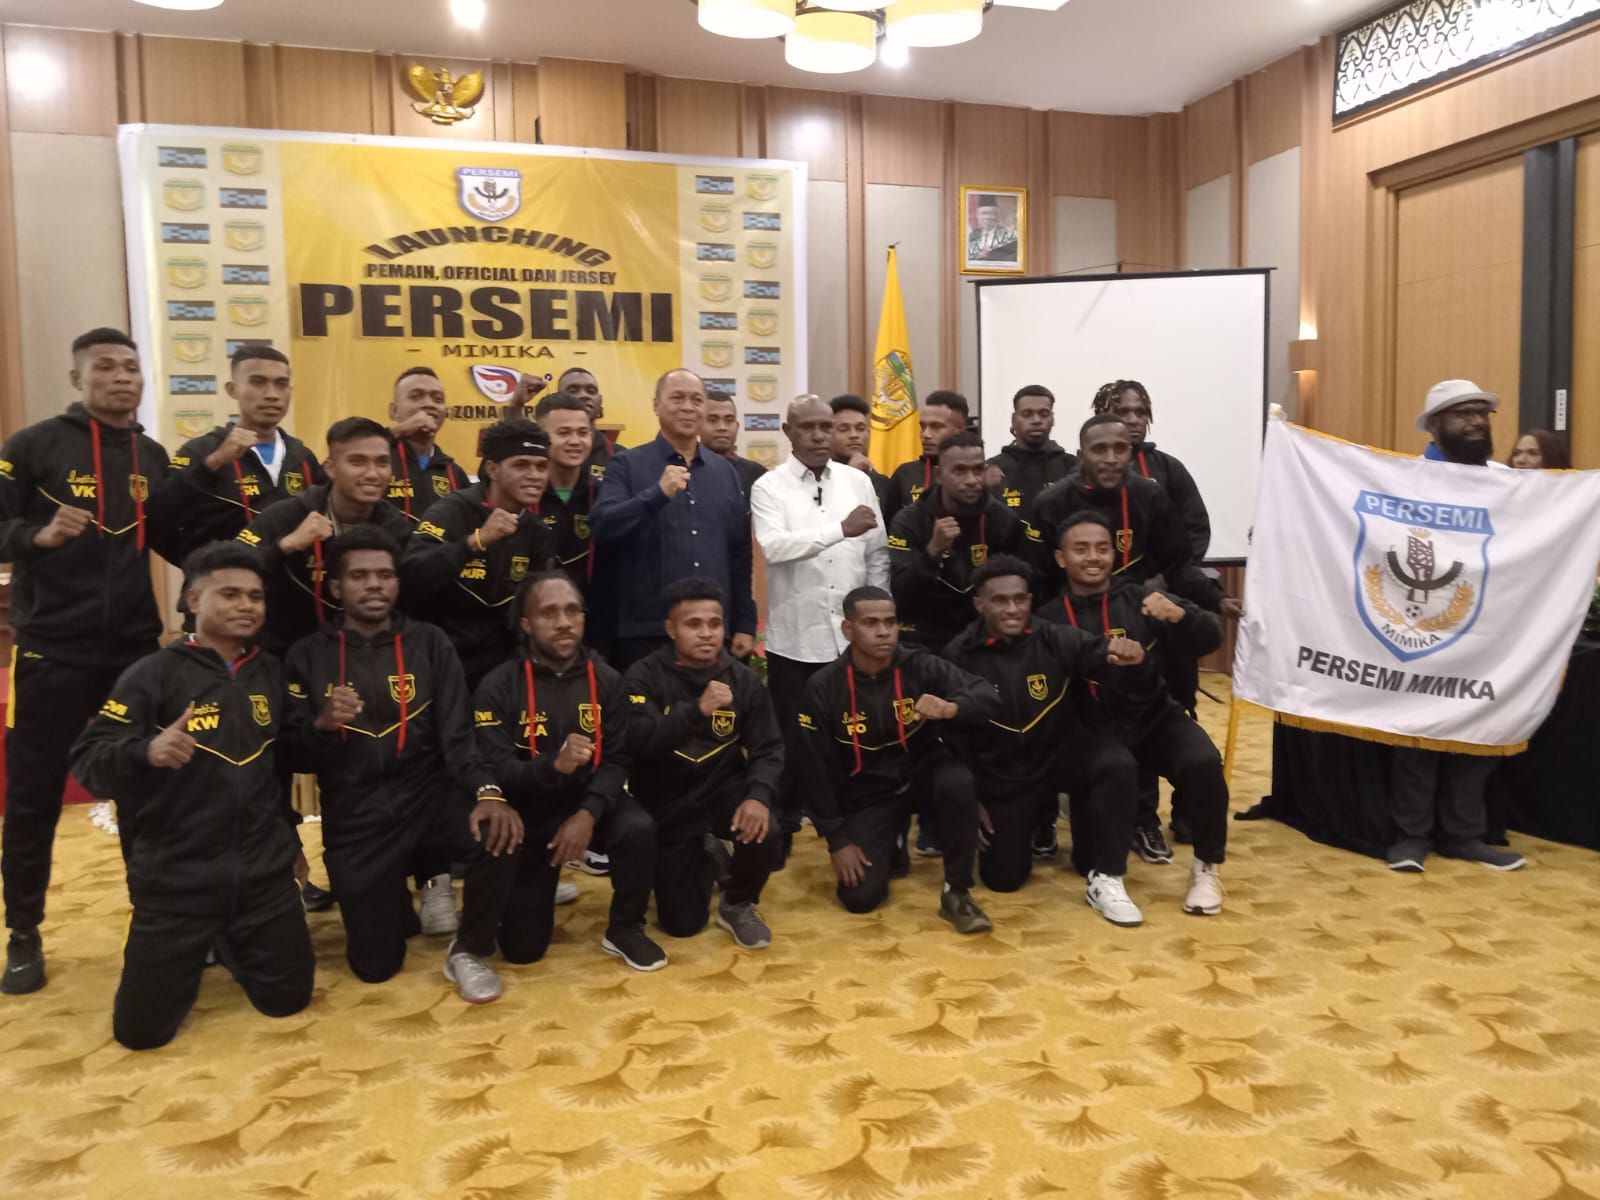 Launching Pemain, Official dan Jersey Persemi Mimika   Robert Mayaut ; Persemi Harus Bisa sampai ke Liga 2 dan Liga 1